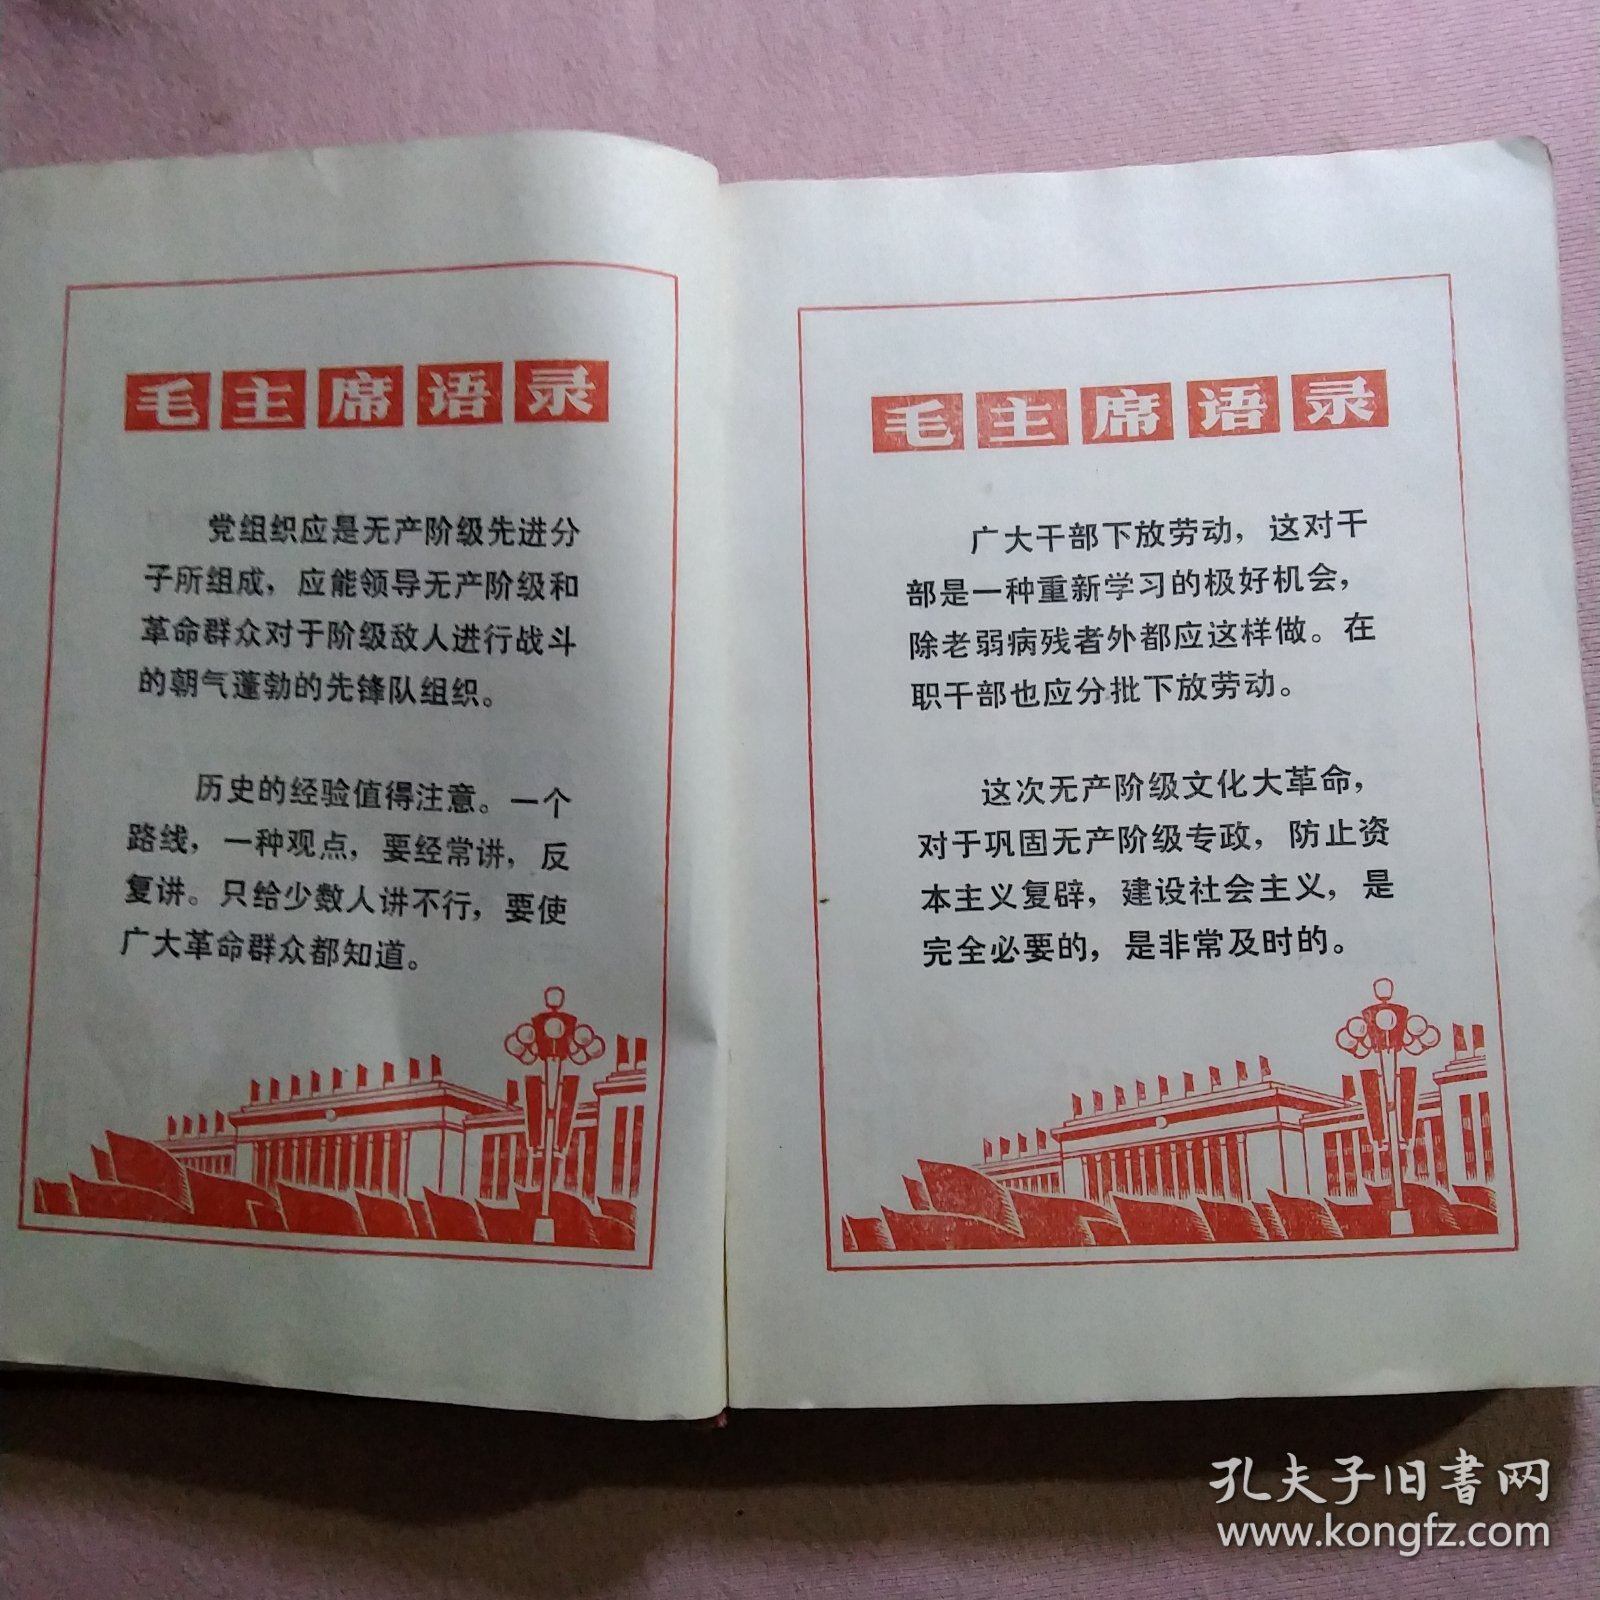 60年代笔记本 空白未用 内有24页毛主席语录